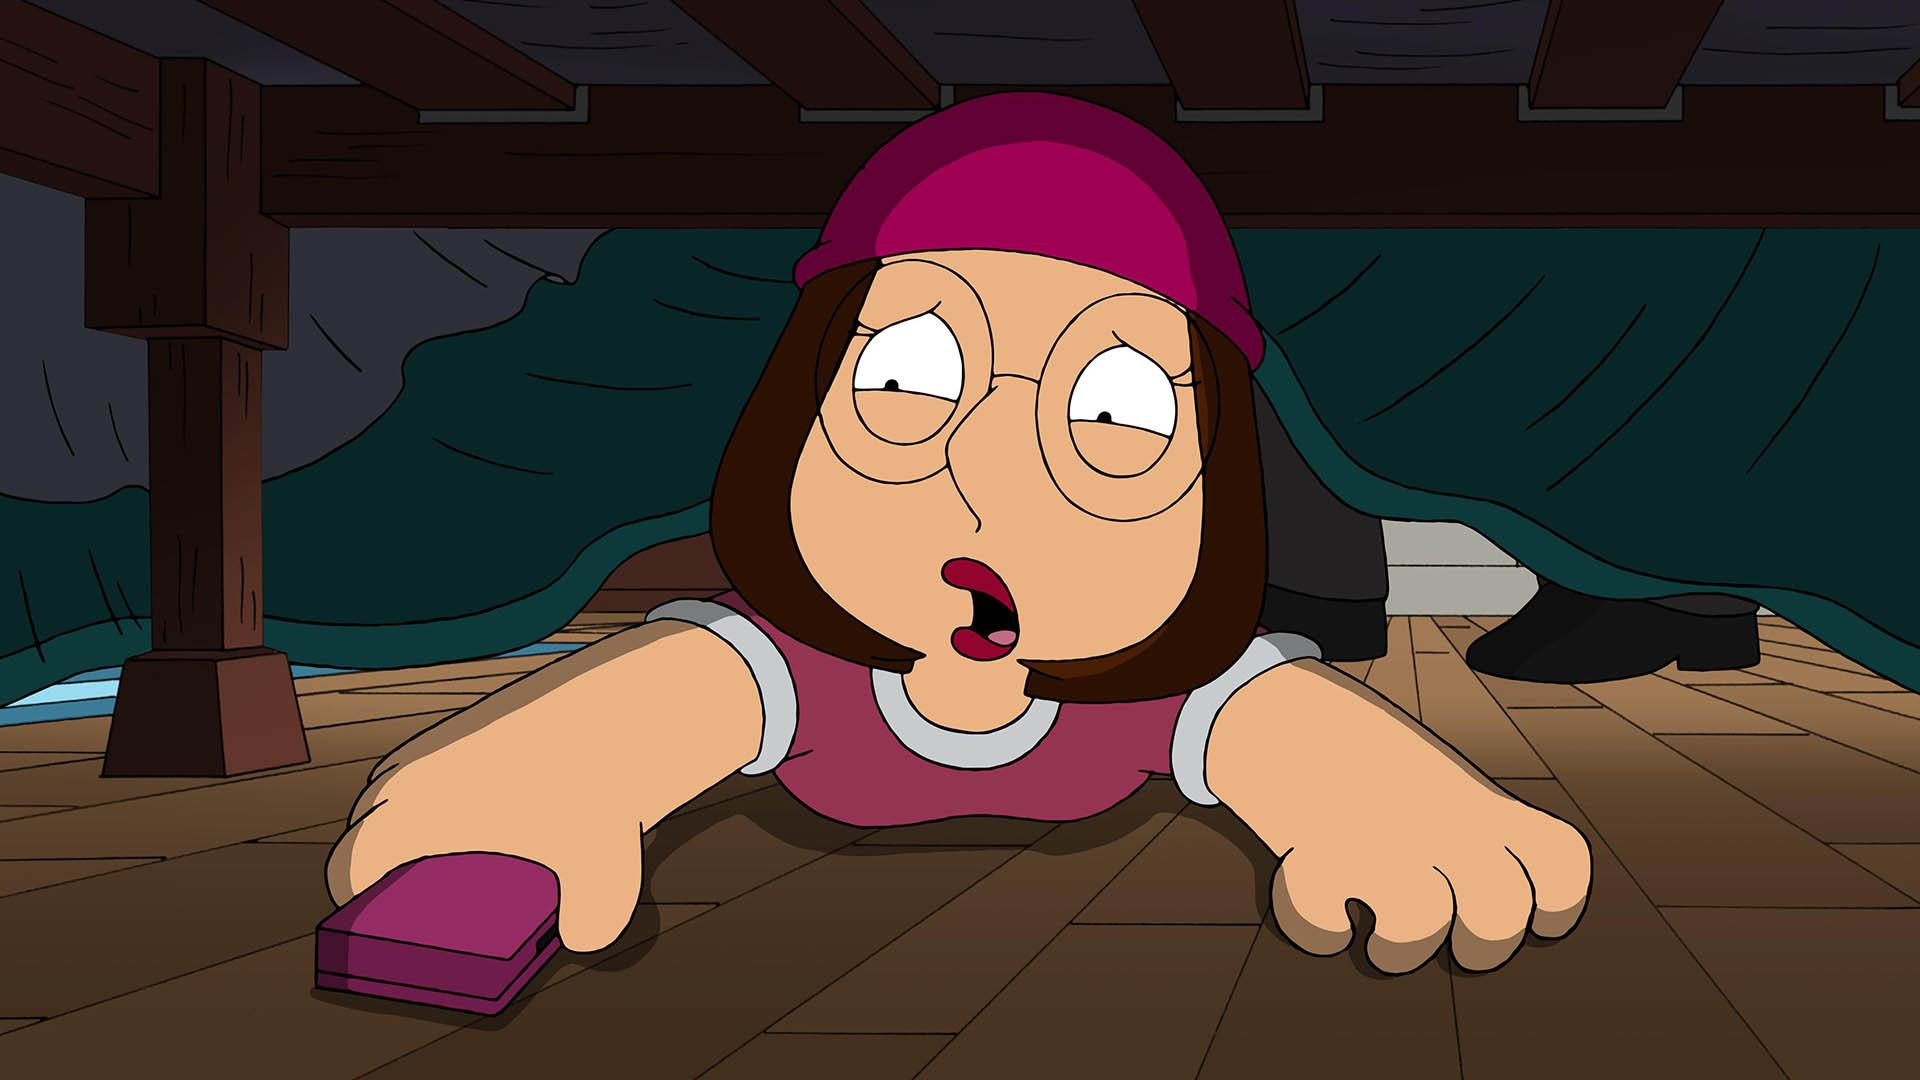 شخصیت مگ گریفین زیر تخت اتاقش در سریال Family Guy